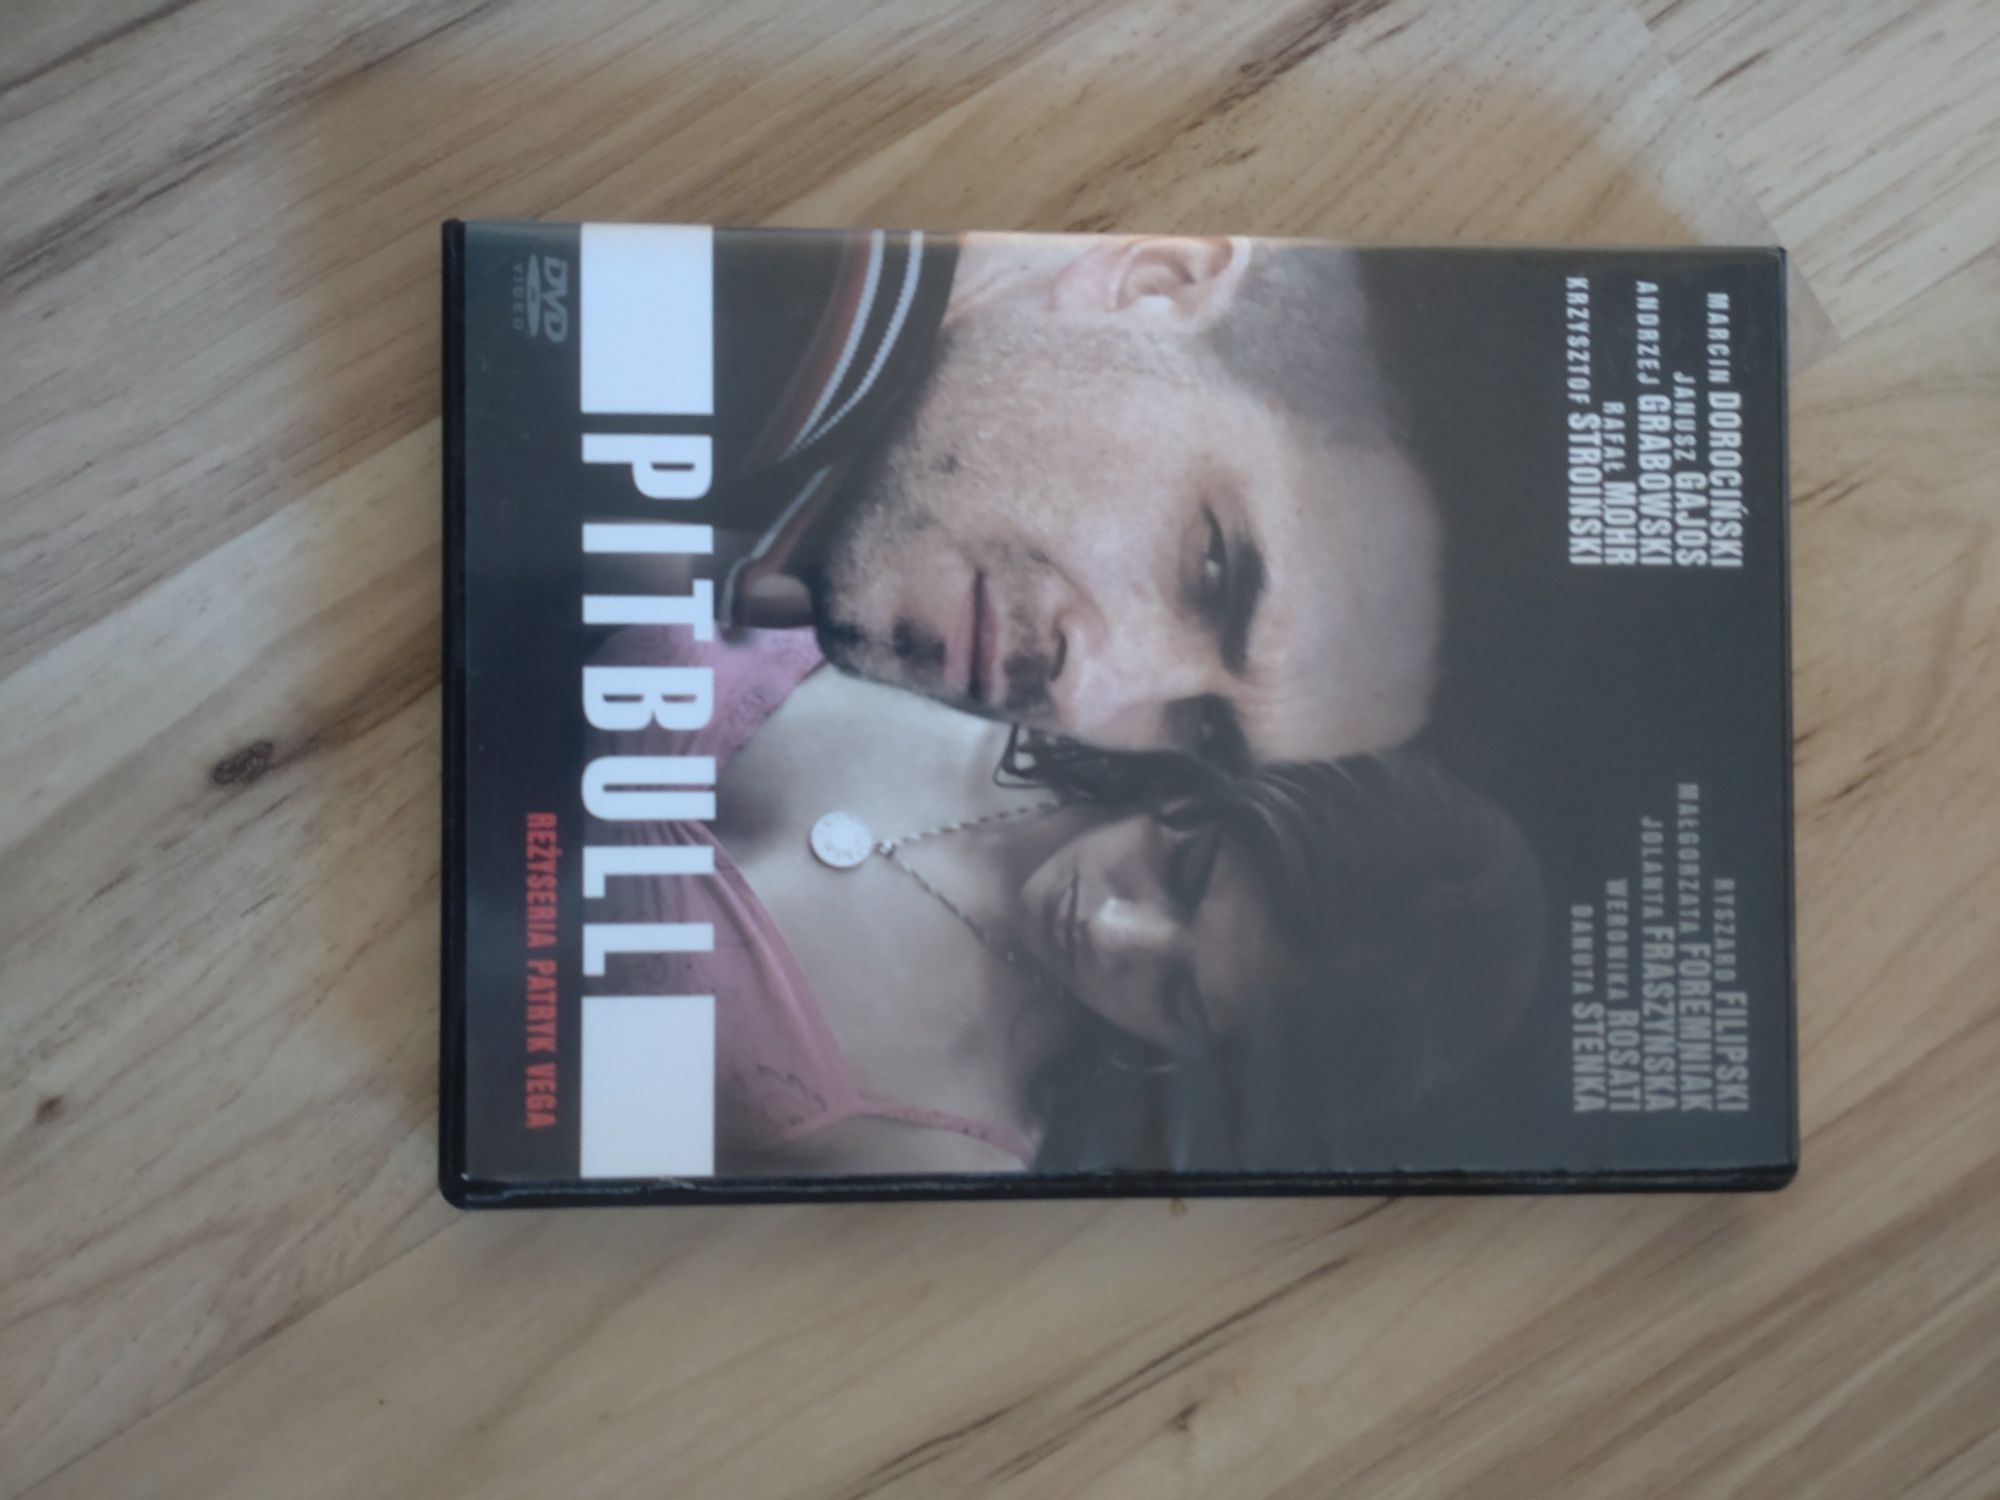 Film Pitbull płyta